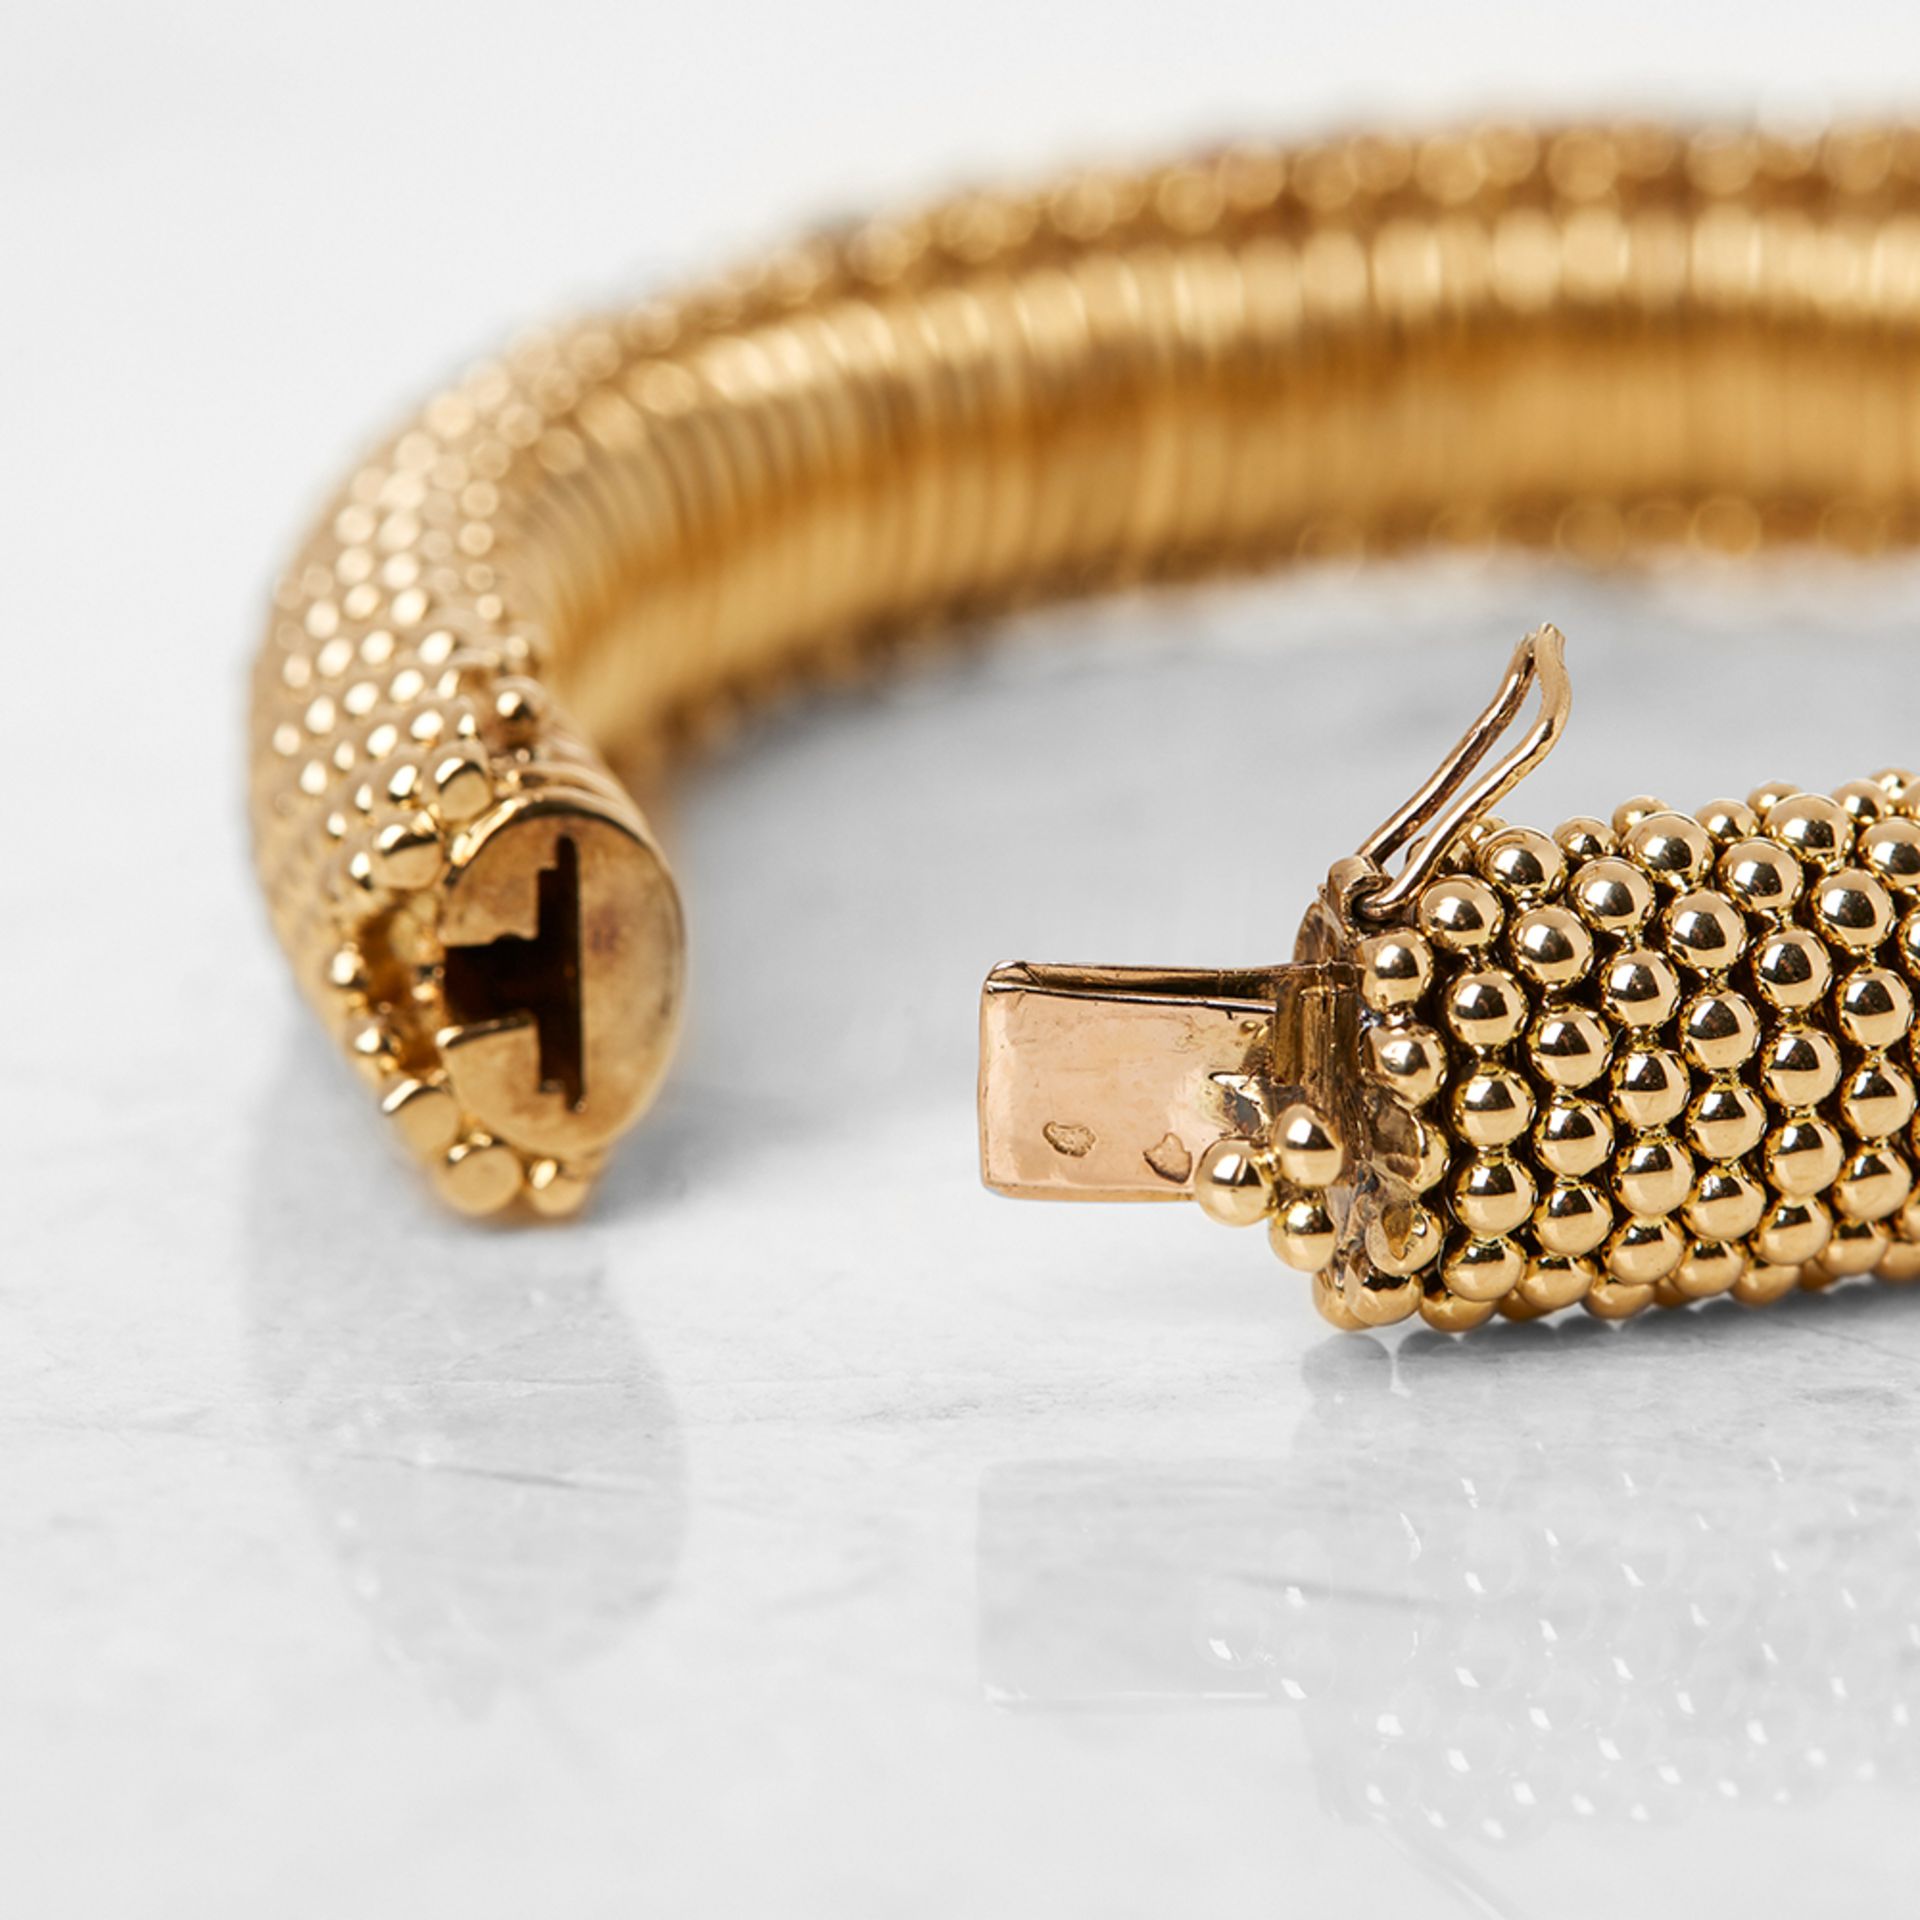 Van Cleef & Arpels 18k Yellow Gold Ruby & Diamond Bracelet - Image 5 of 7